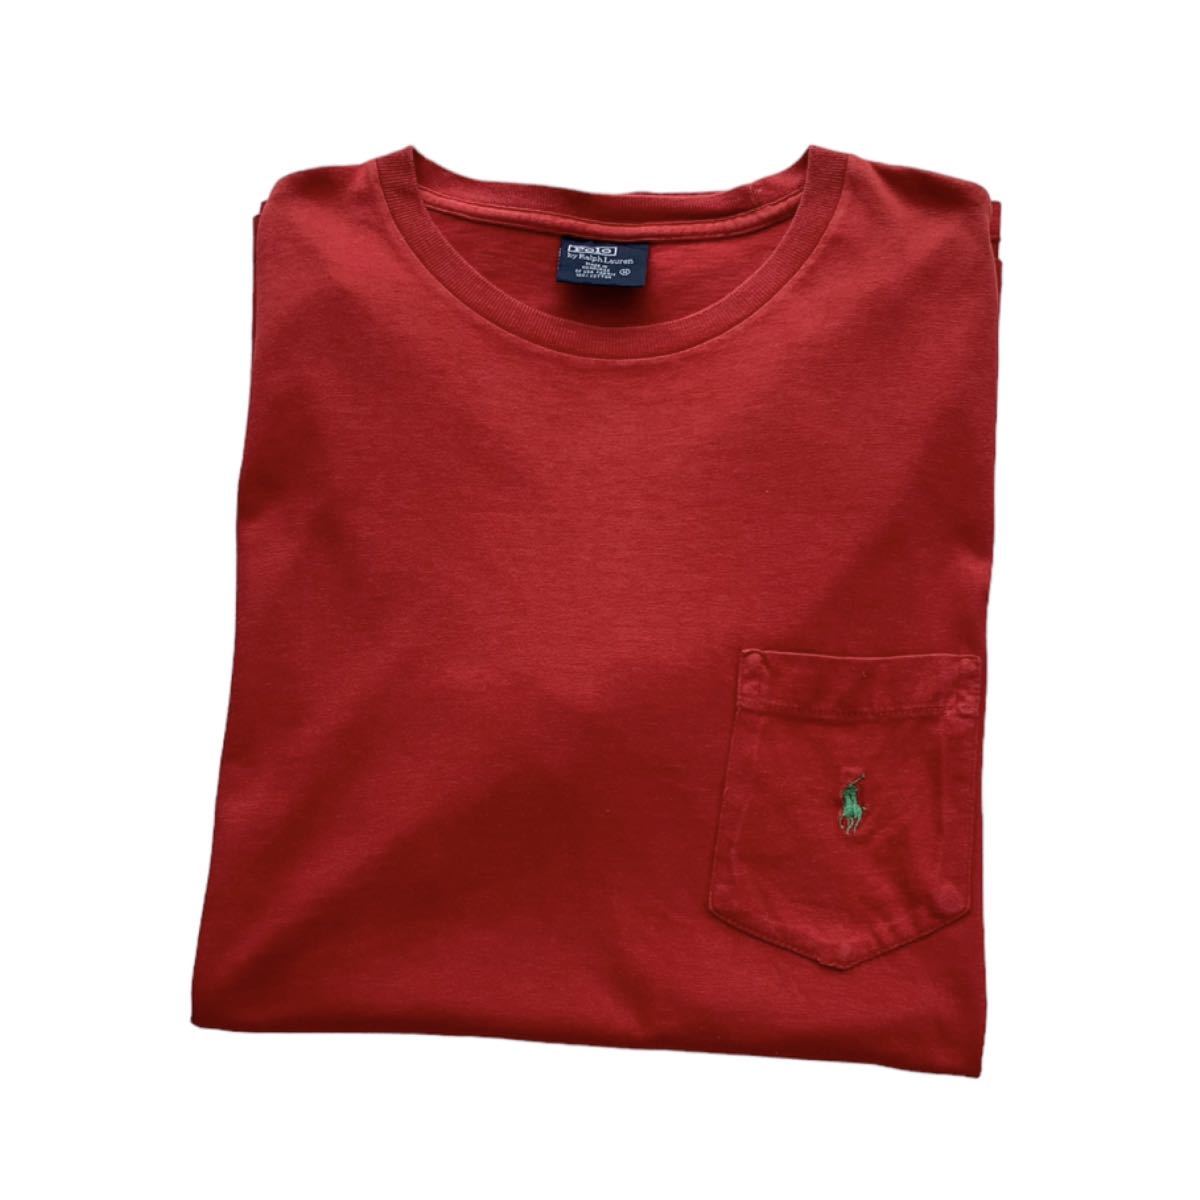 90's Polo Ralph Lauren ワンポイント ポニー 刺繍 ポケットTシャツ M